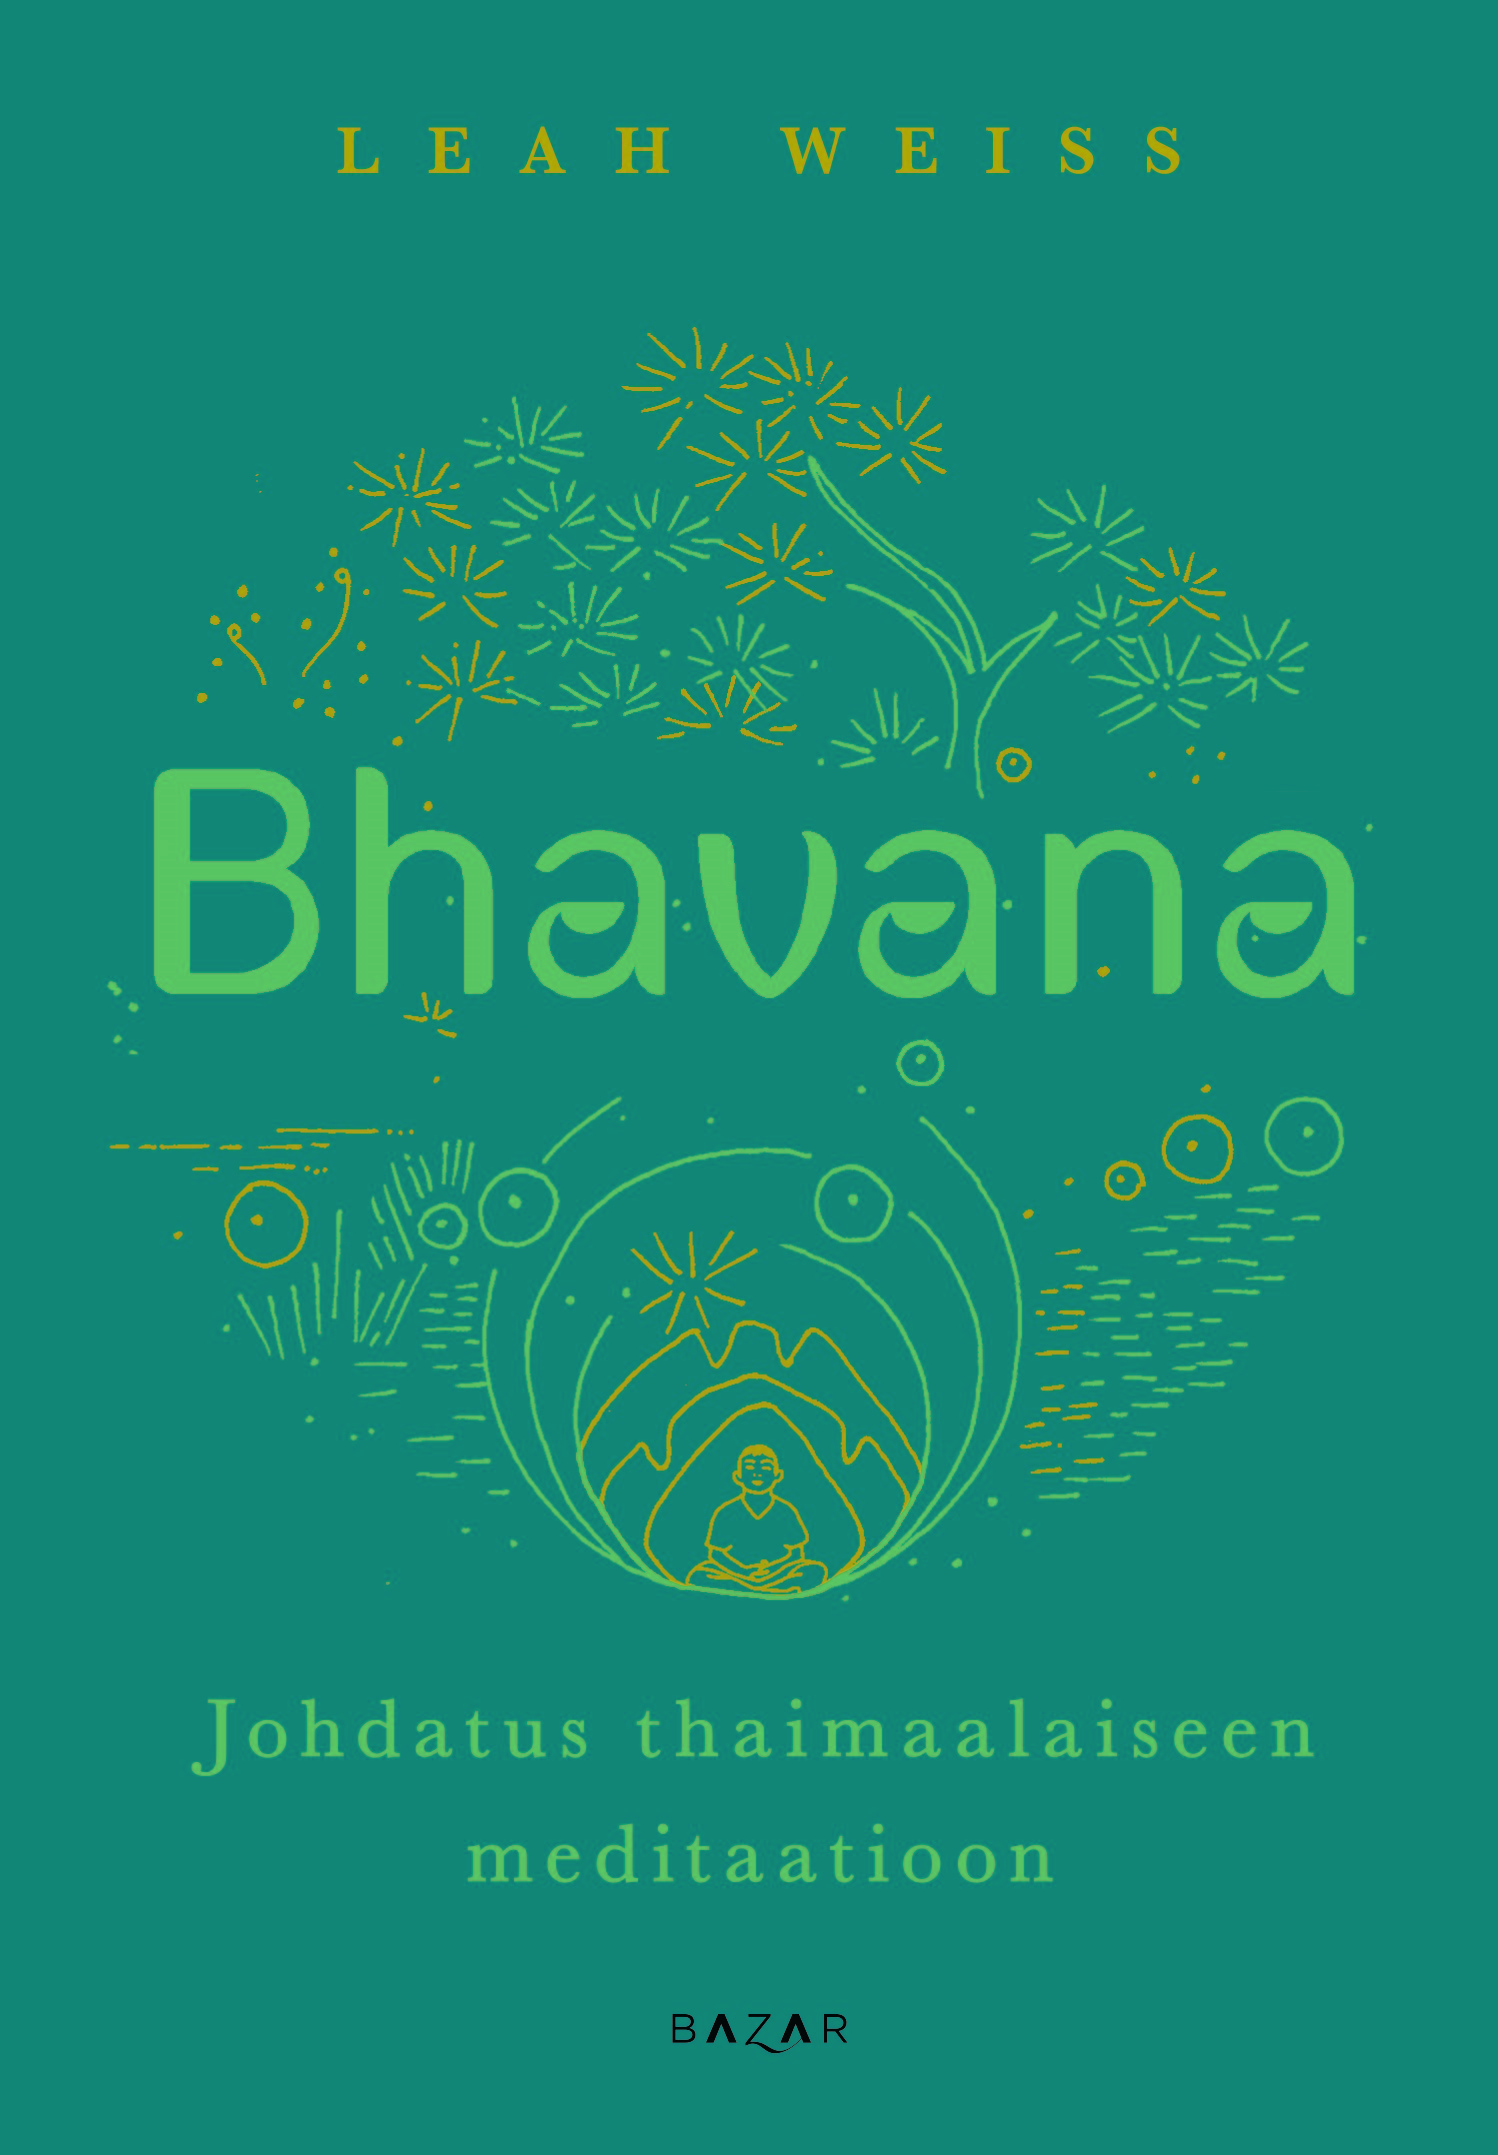 Weiss, Leah - Bhavana: Johdatus thaimaalaiseen meditaatioon, ebook